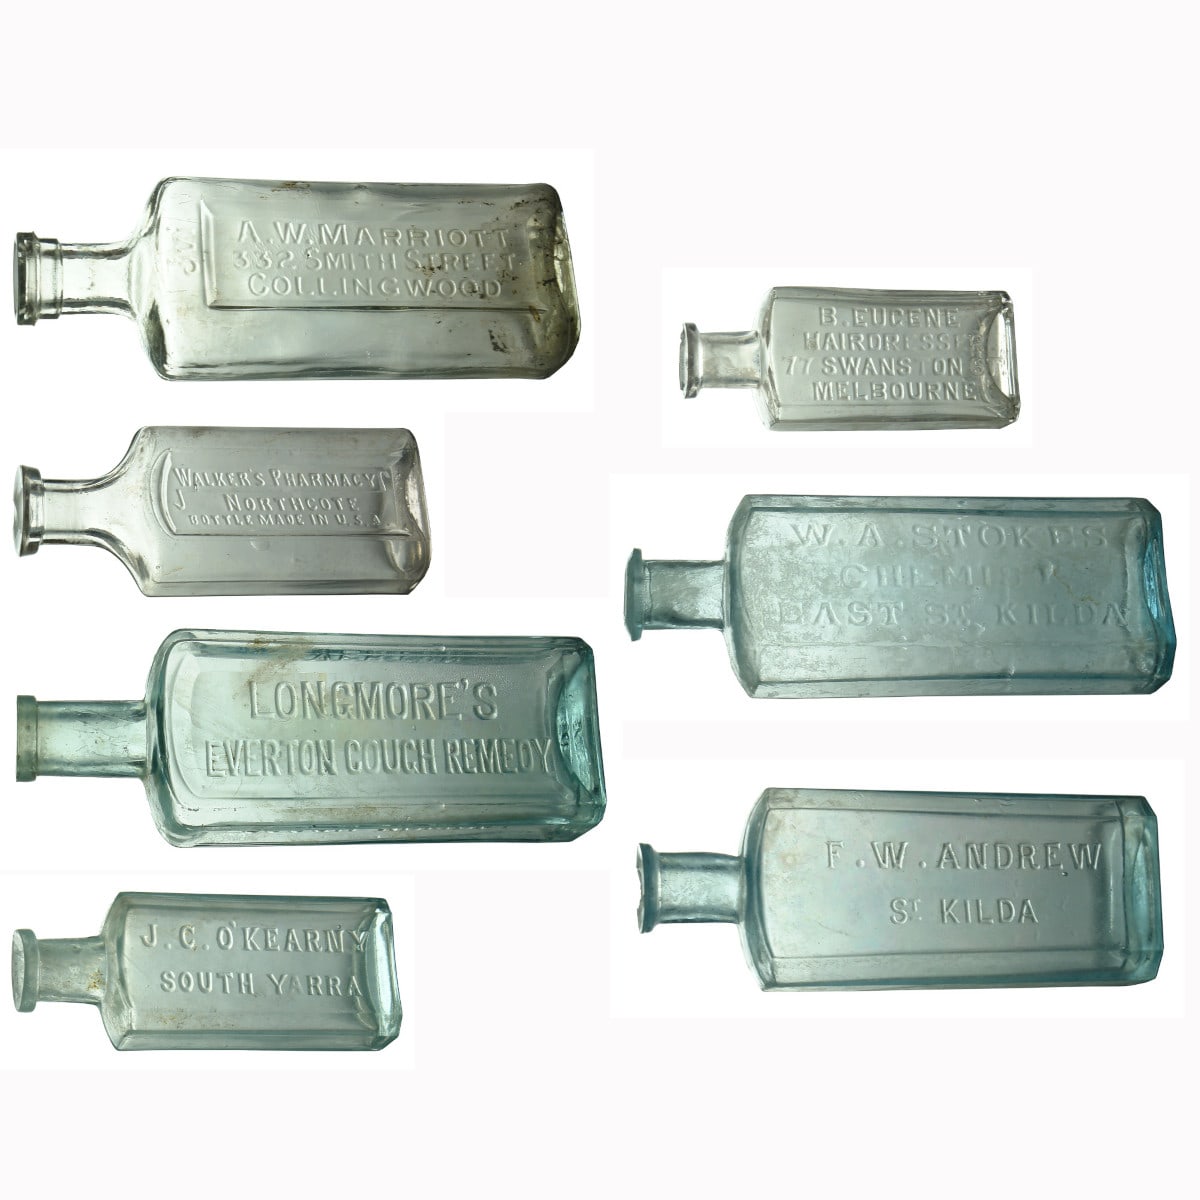 Seven Melbourne Chemist type bottles.